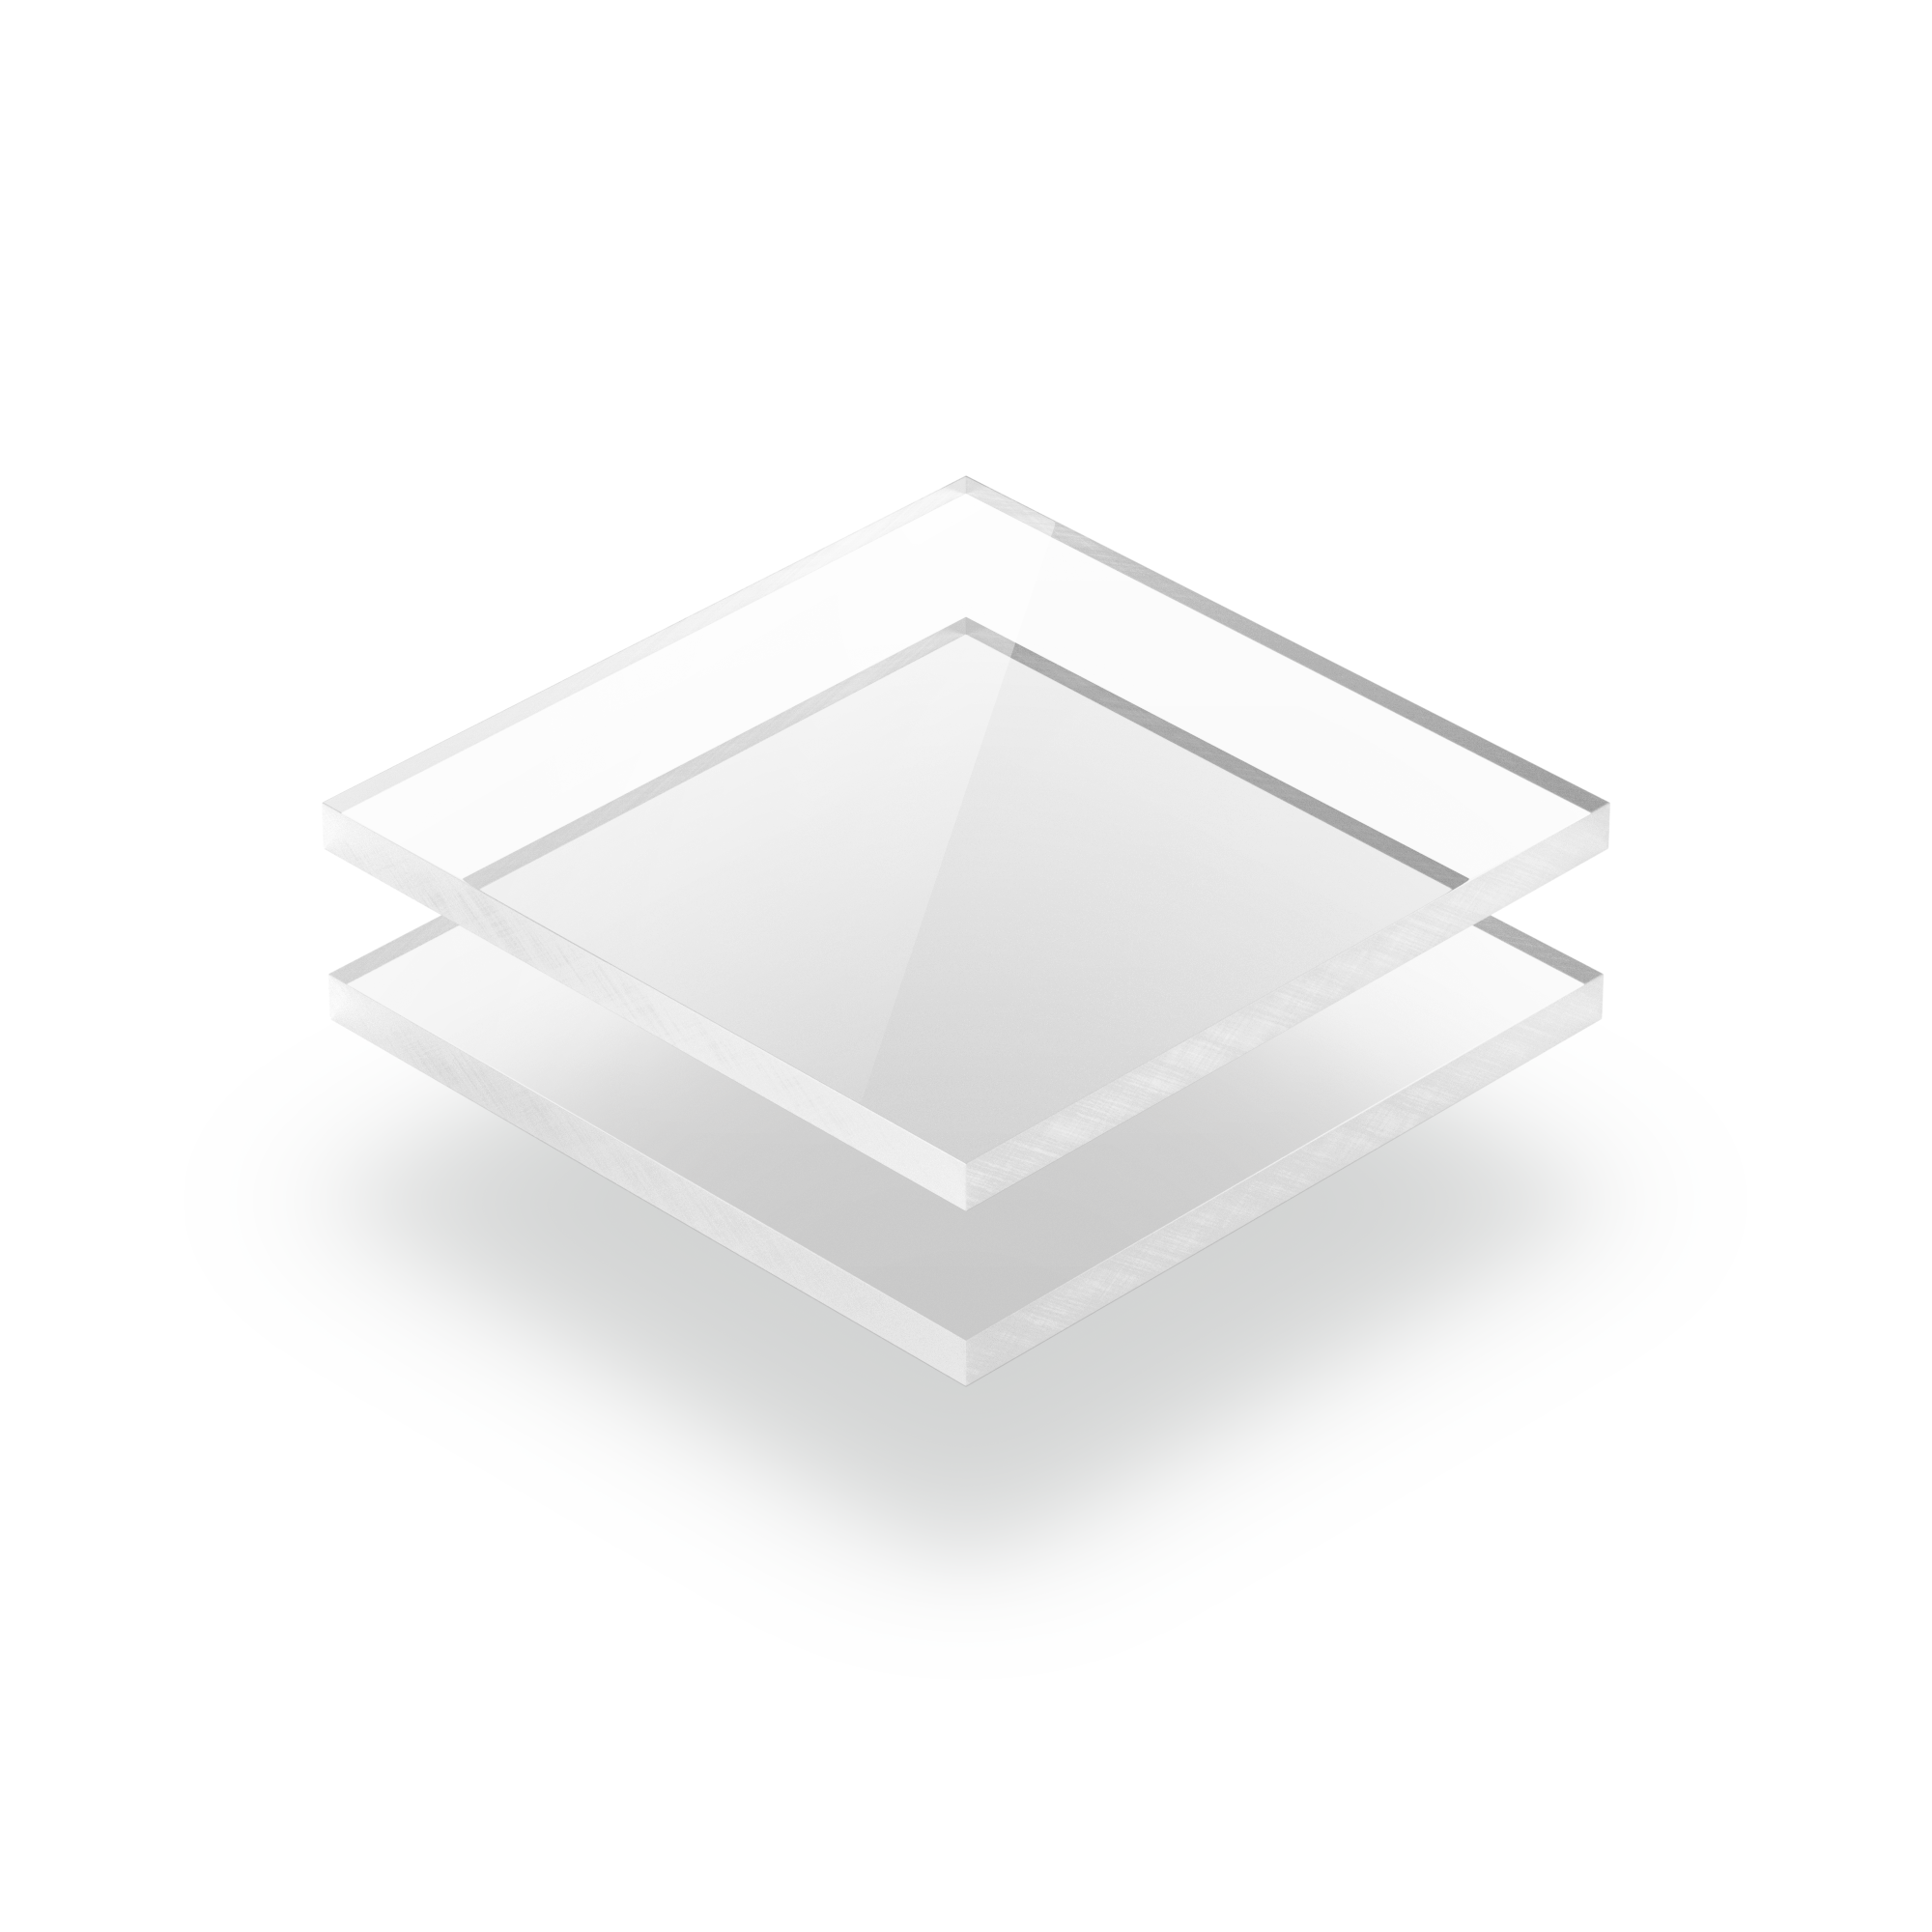 Acryl XT Platte 4mm Zuschnitt DIN A3 420 x 297 mm Kunststoffglas klar Acrylglas 